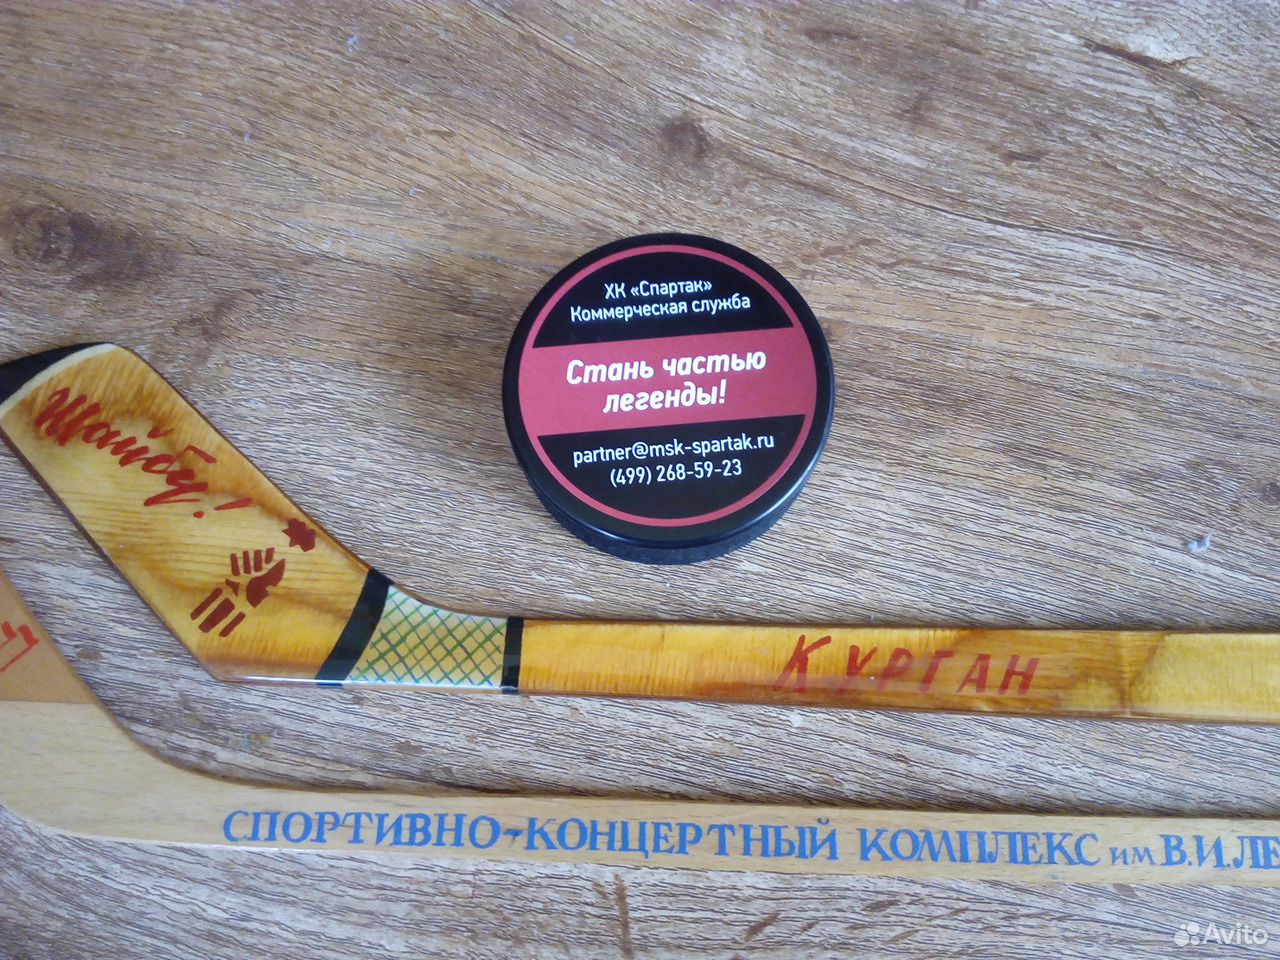 Купить на авито хоккею. Советская хоккейная сувенирная клюшка с автографами. Шайба сувенирная хоккейная купить.